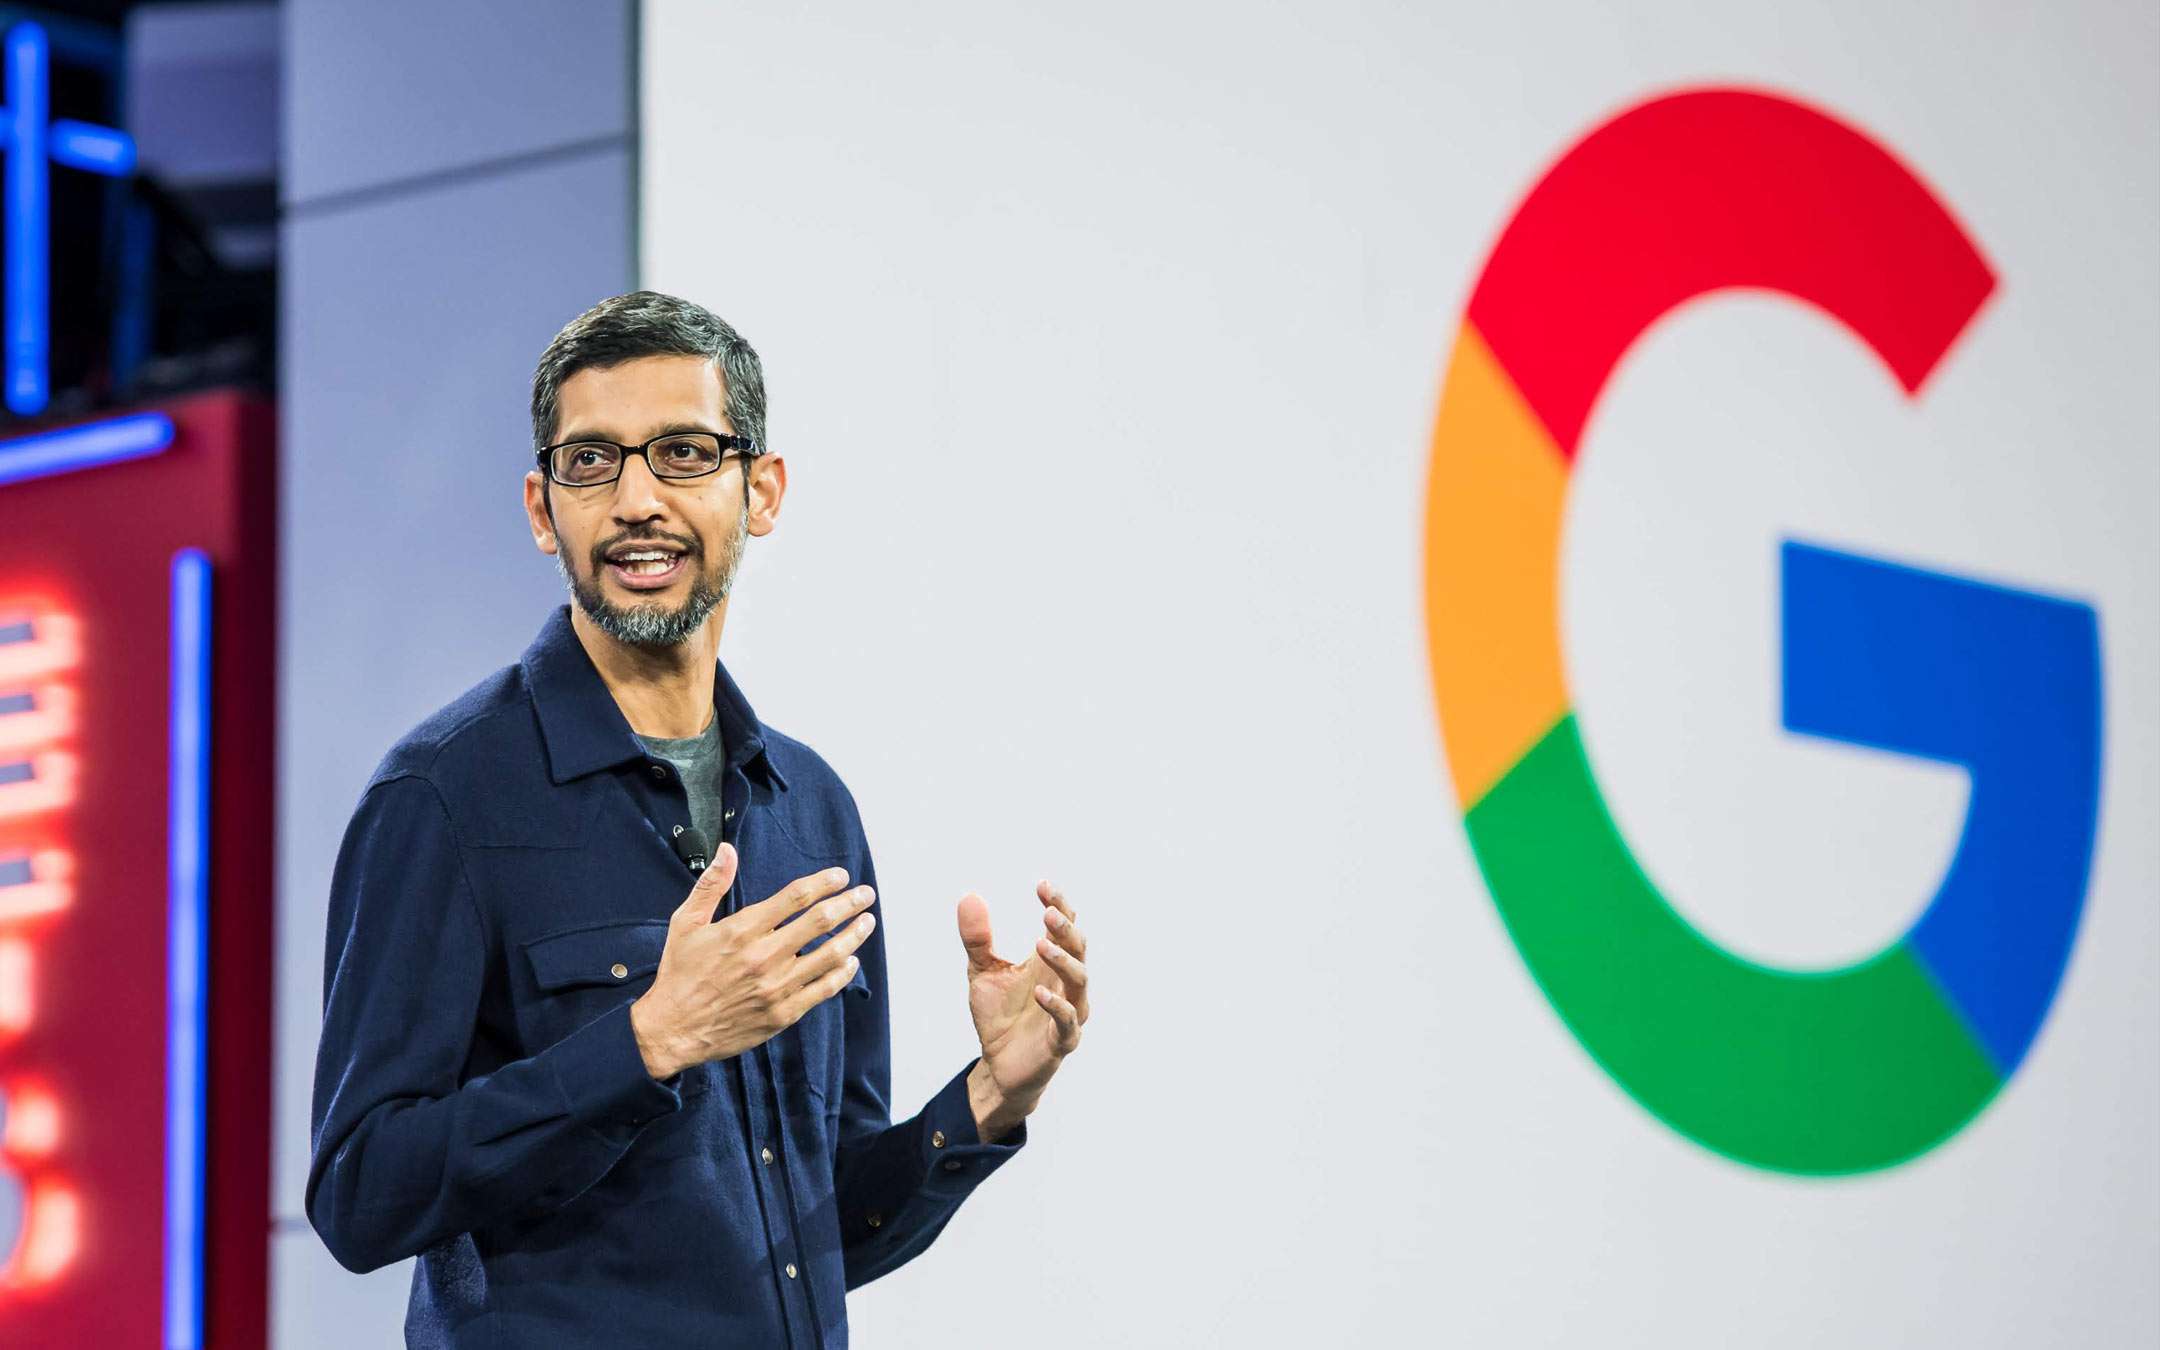 Evento Google 15 ottobre: Pixel 4, speaker e altro